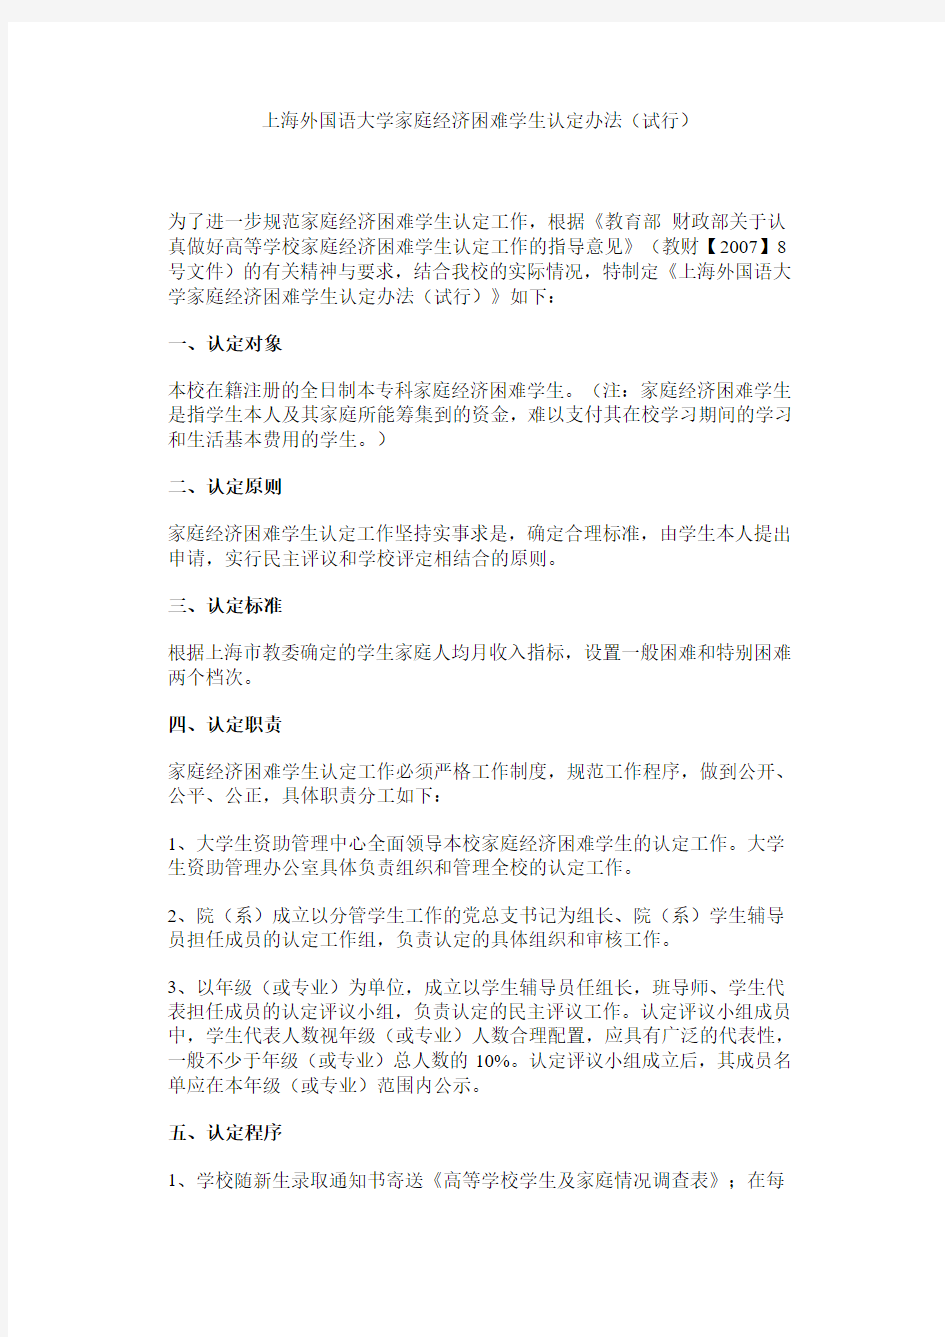 上海外国语大学家庭经济困难学生认定办法(试行)